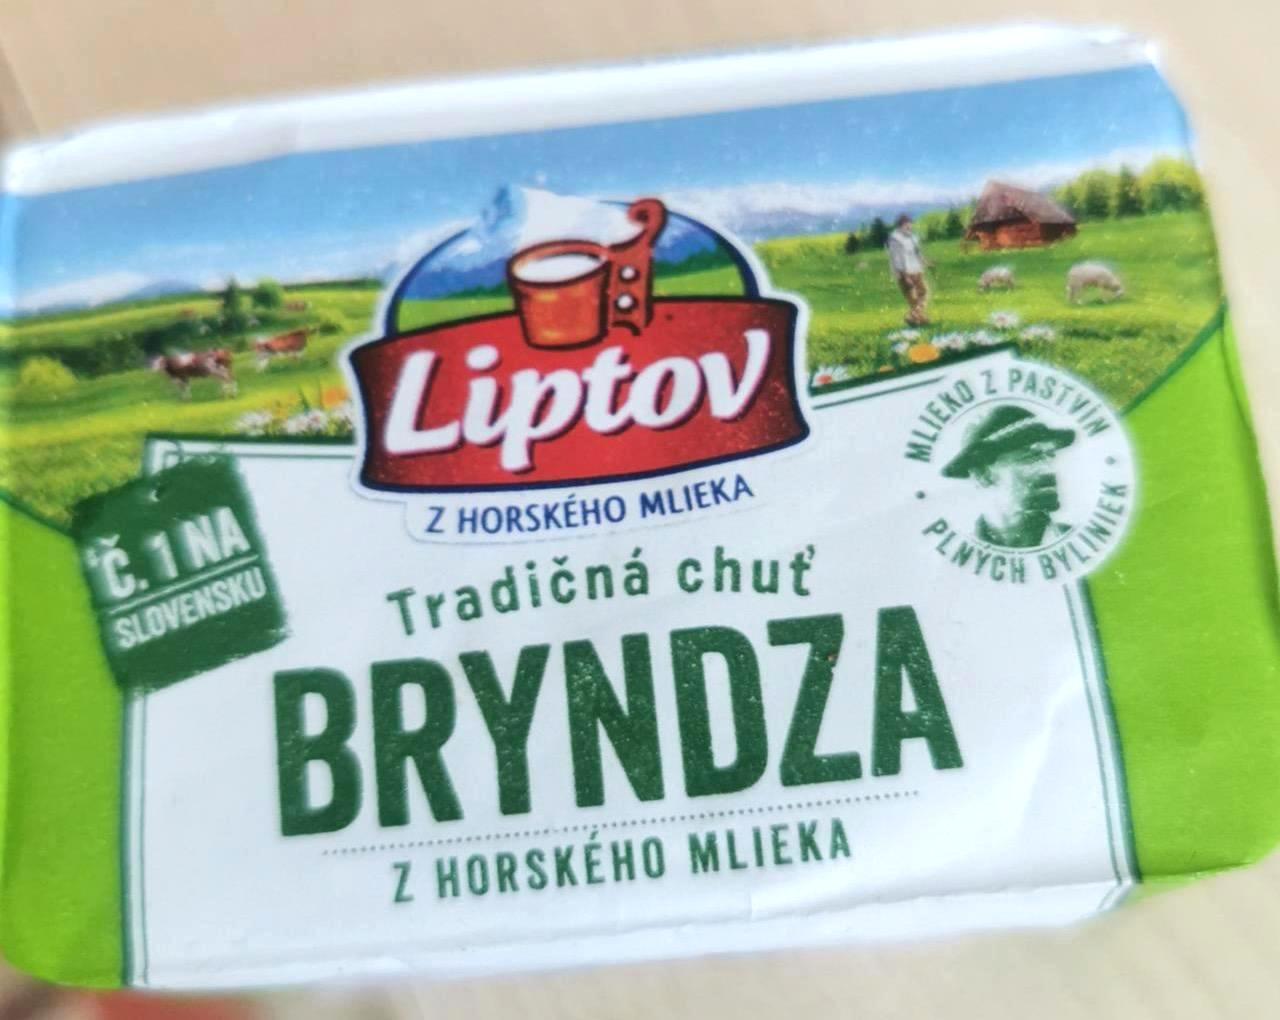 Képek - Bryndza z horského mlieka Liptov